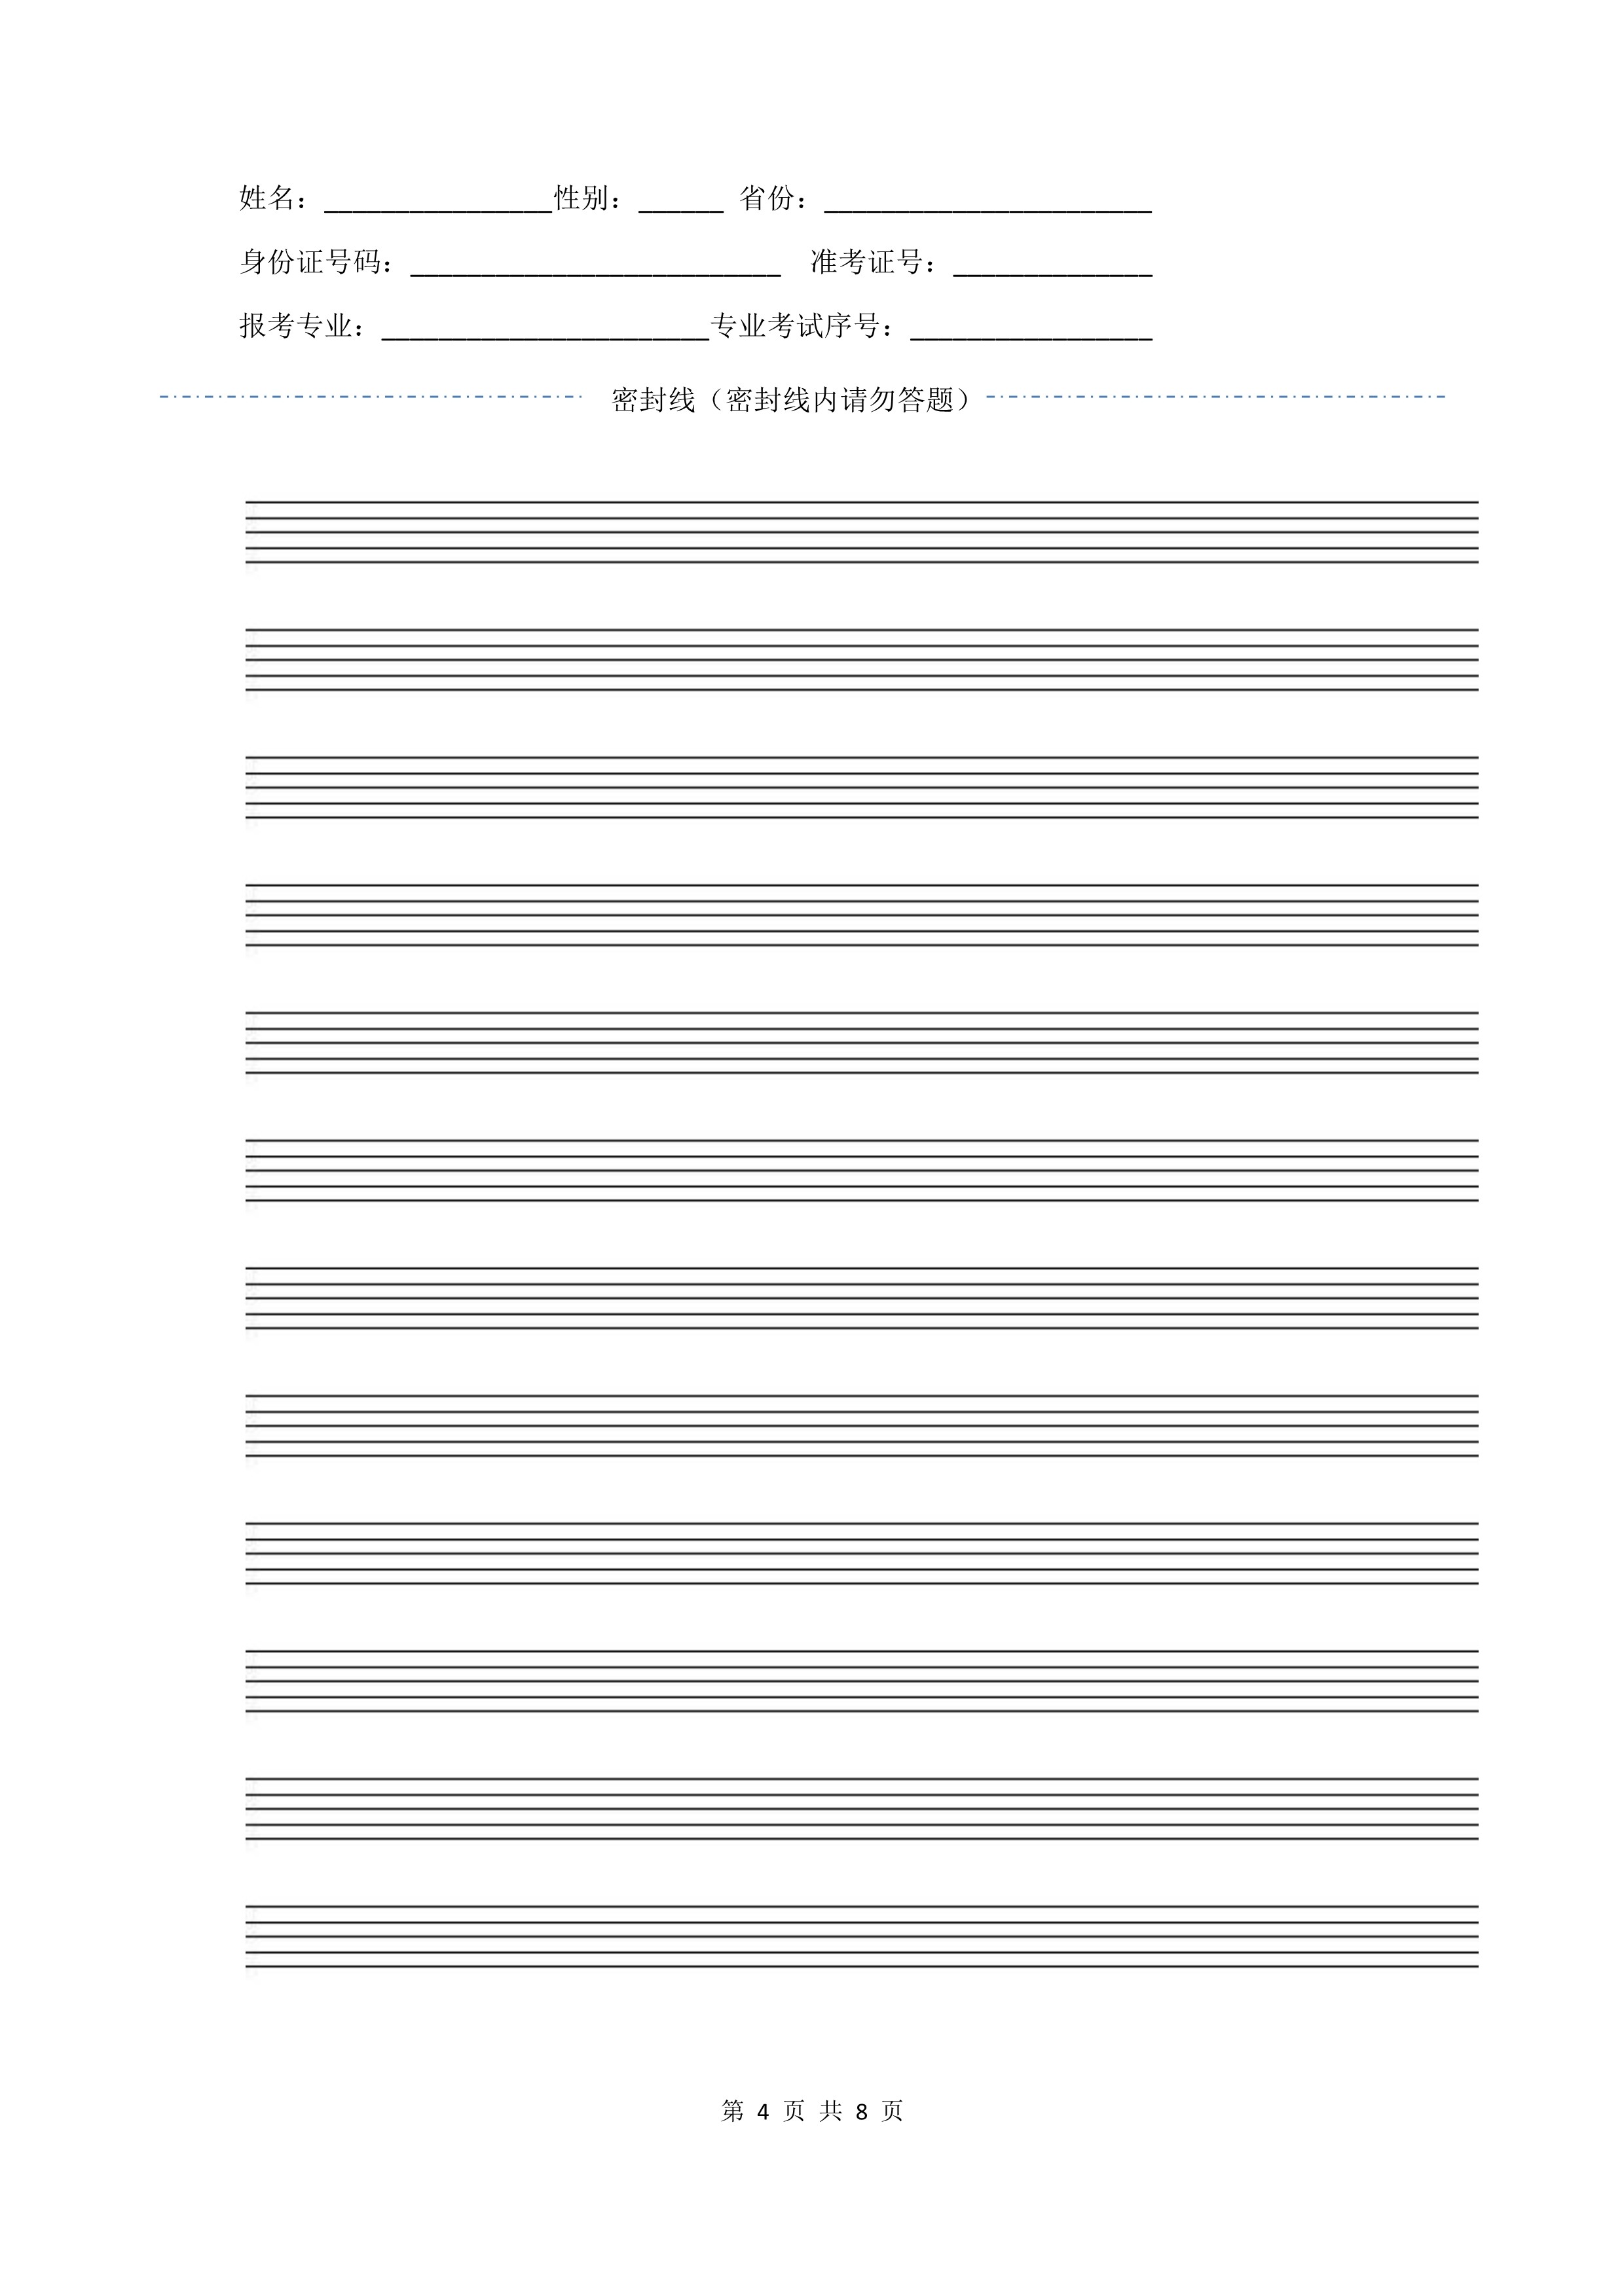 南京艺术学院2022年本科招生作曲与作曲技术理论、作曲与作曲技术理论（计算机作曲）专业《歌曲写作》科目考试答题纸及草稿纸_4.jpg